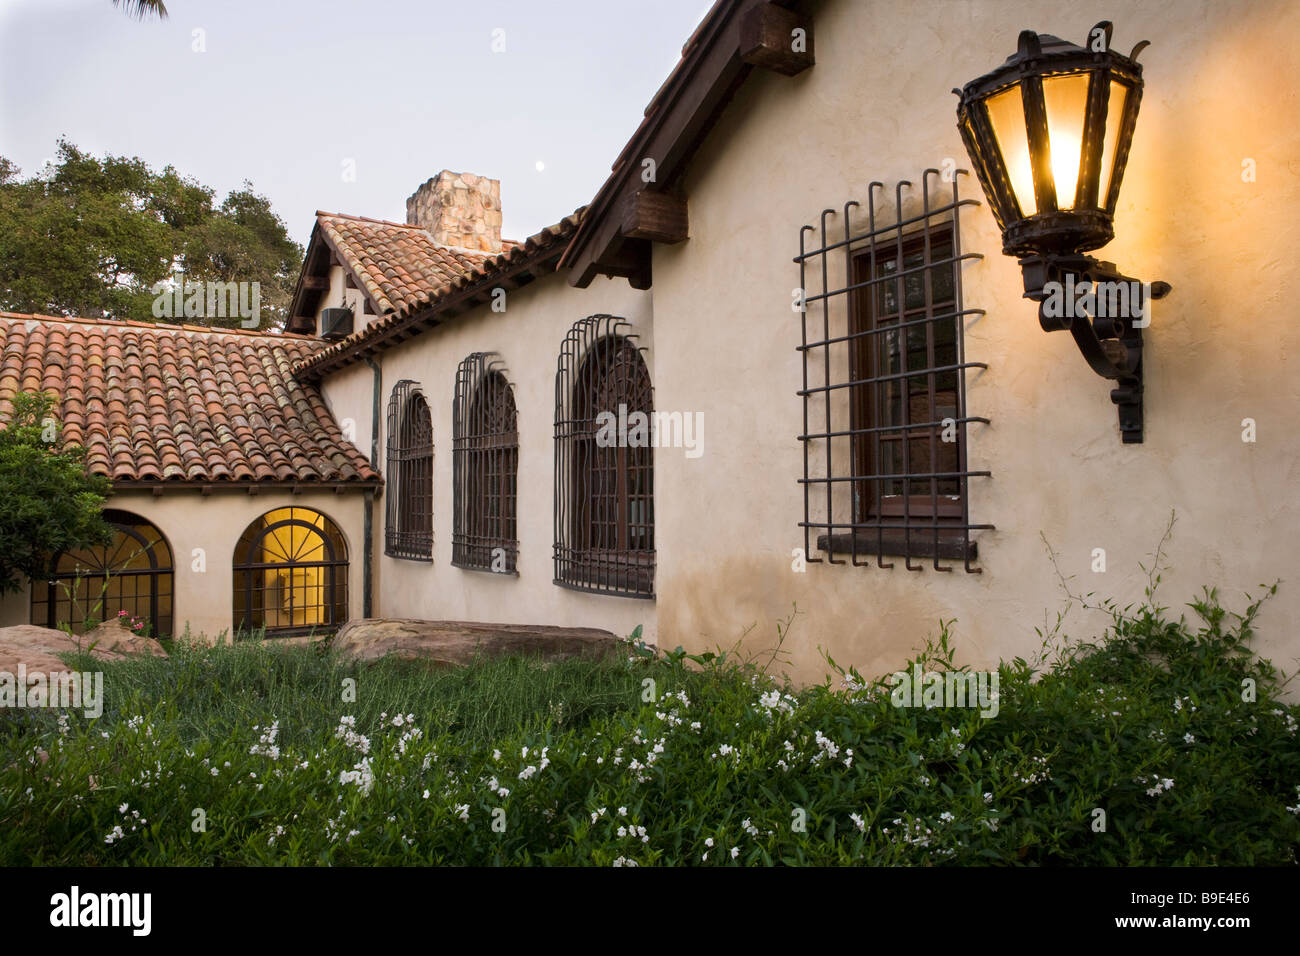 Reihe der Fenster mit schmiedeeisernen grills auf Seite des Haus im spanischen Stil Stockfoto